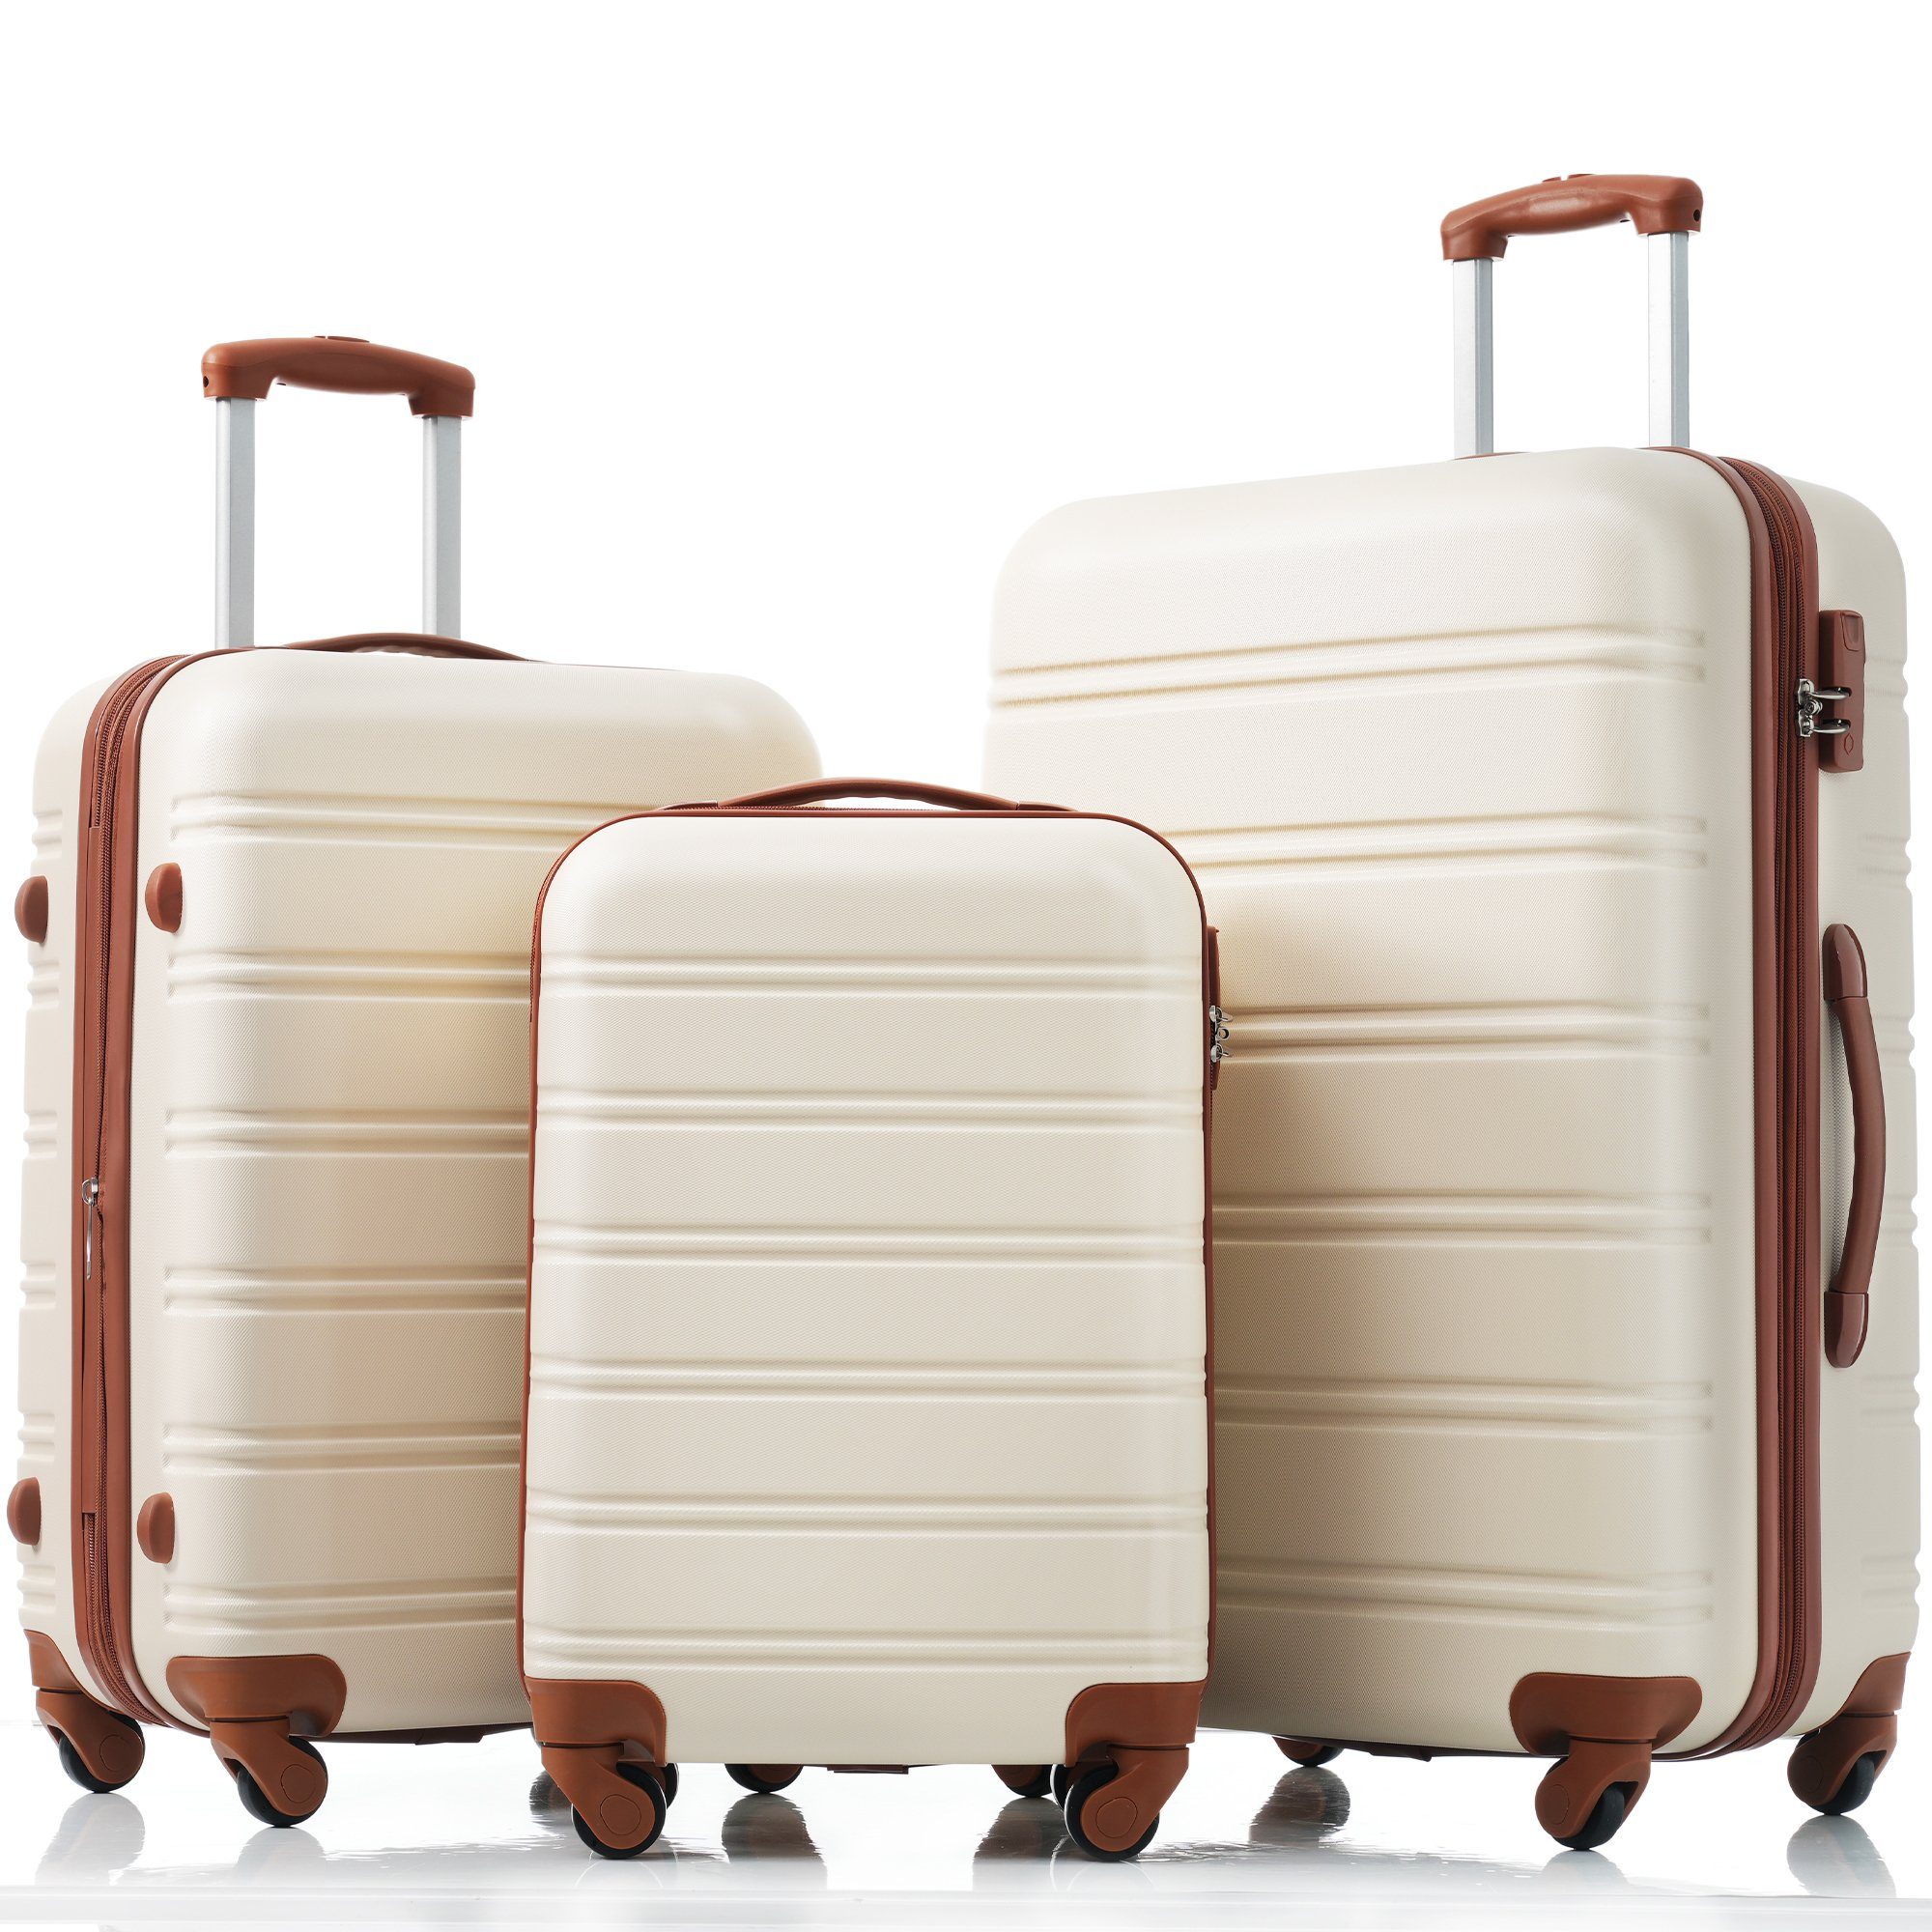 Koffer online kaufen » Reisekoffer